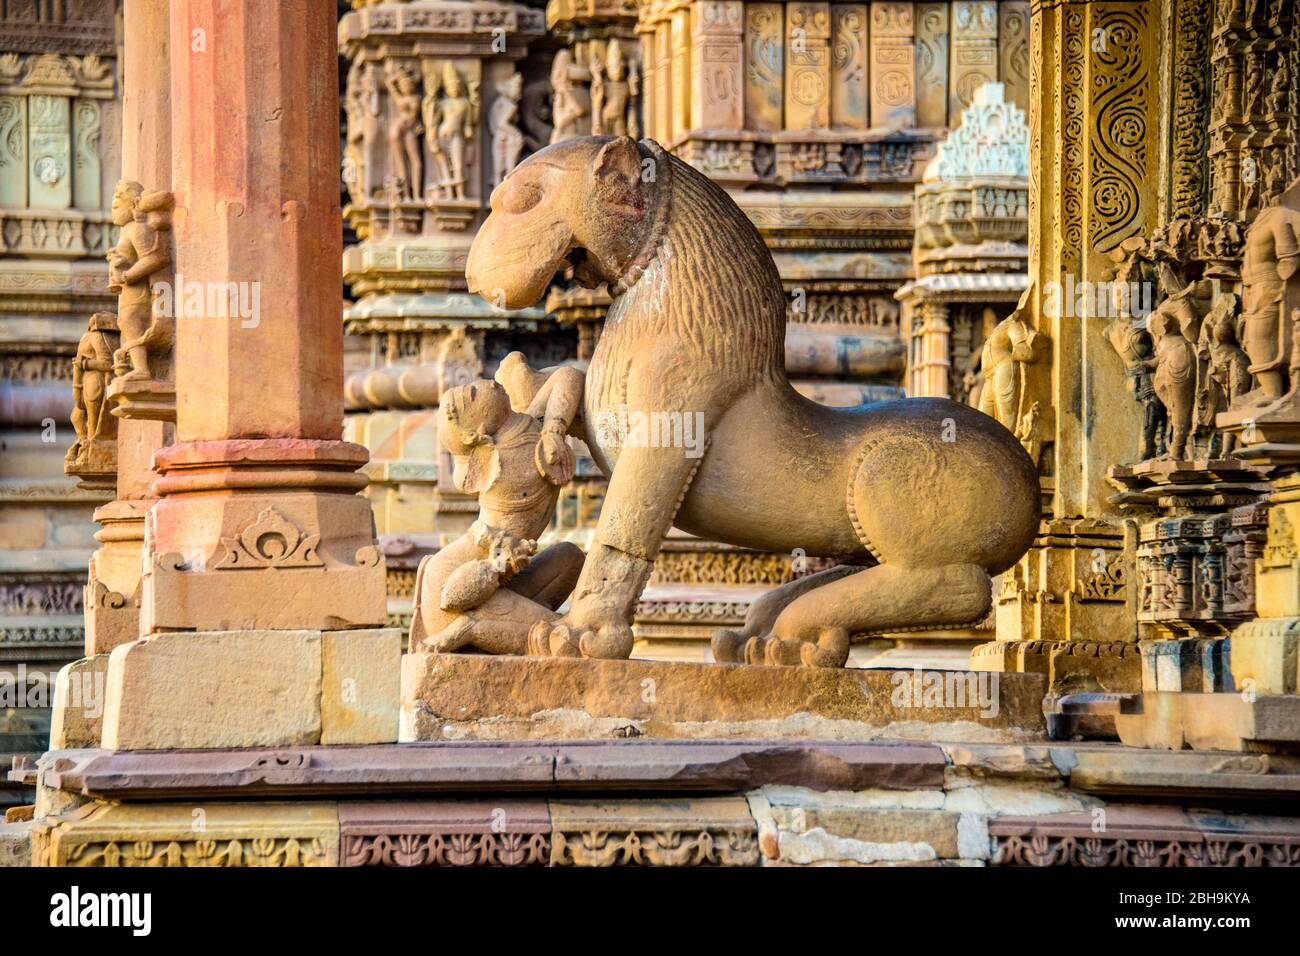 Khajuraho temples, Madhya Pradesh, India Stock Photo